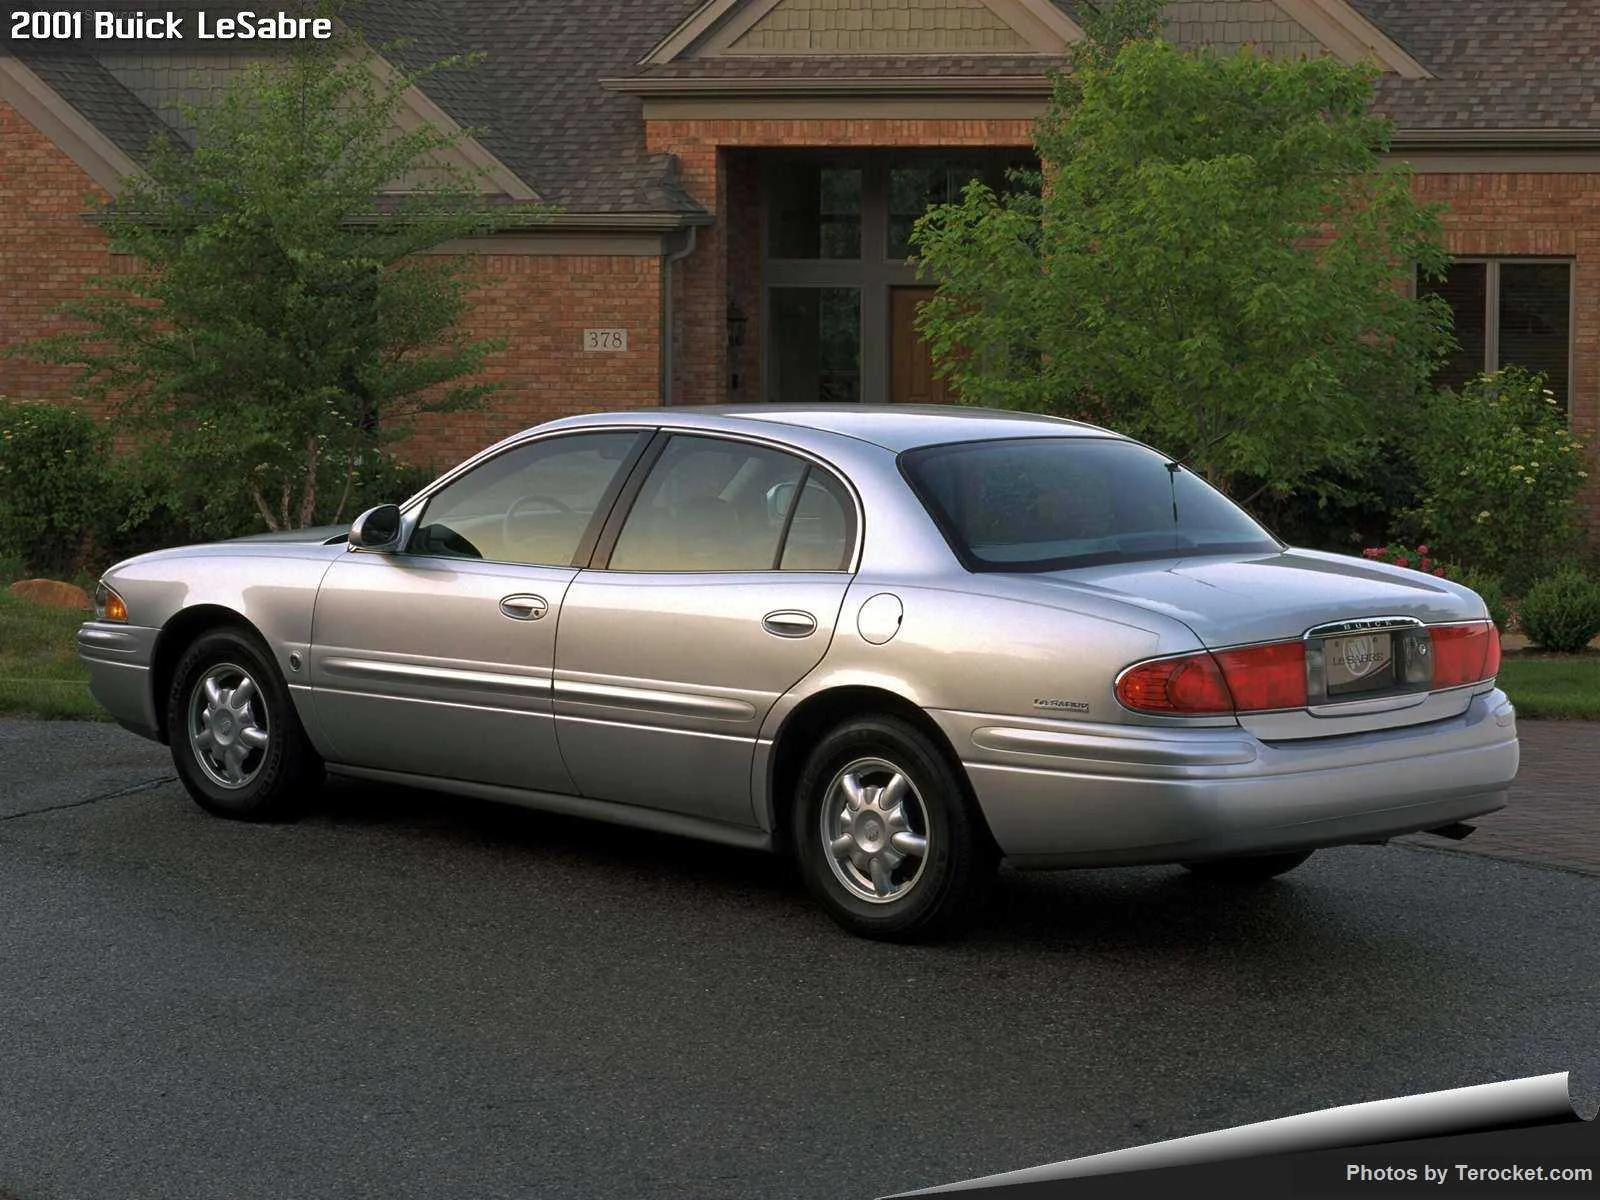 Hình ảnh xe ô tô Buick LeSabre 2001 & nội ngoại thất